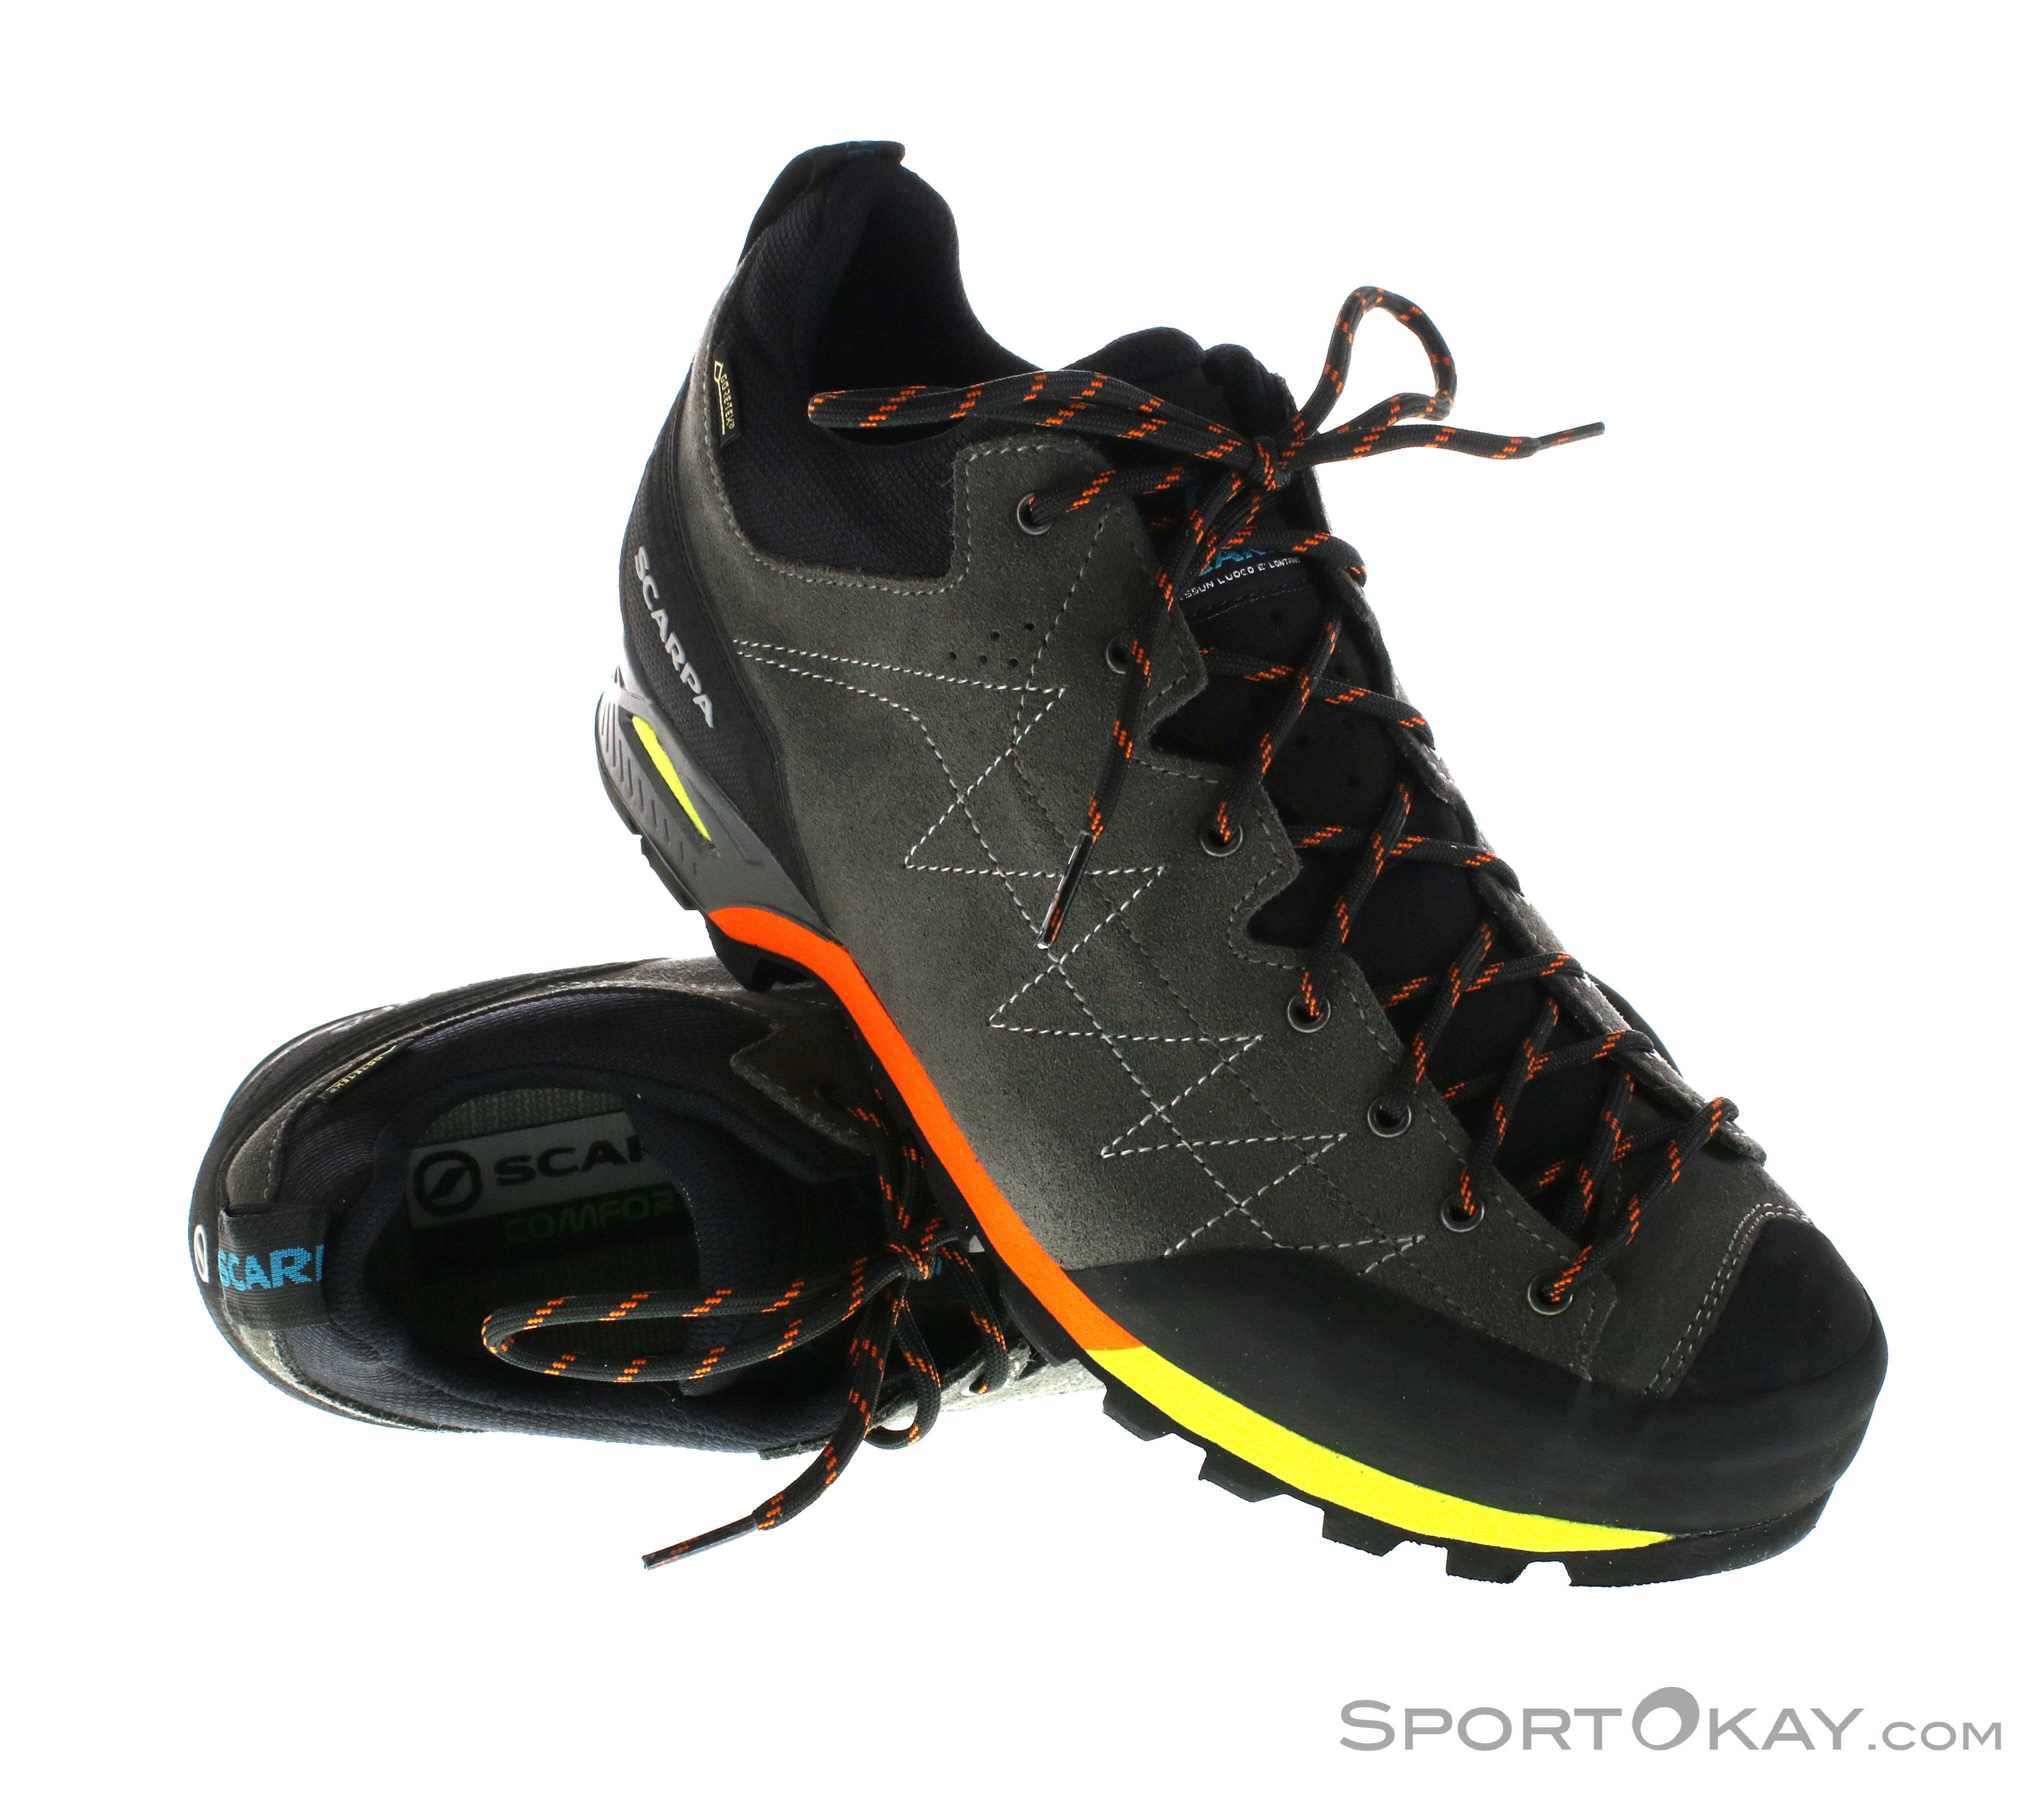 Scarpa Zodiac GTX Uomo Approach Shoes Gore-Tex - Scarpe per il tempo libero  - Scarpe \u0026 bastoni - Outdoor - Tutti